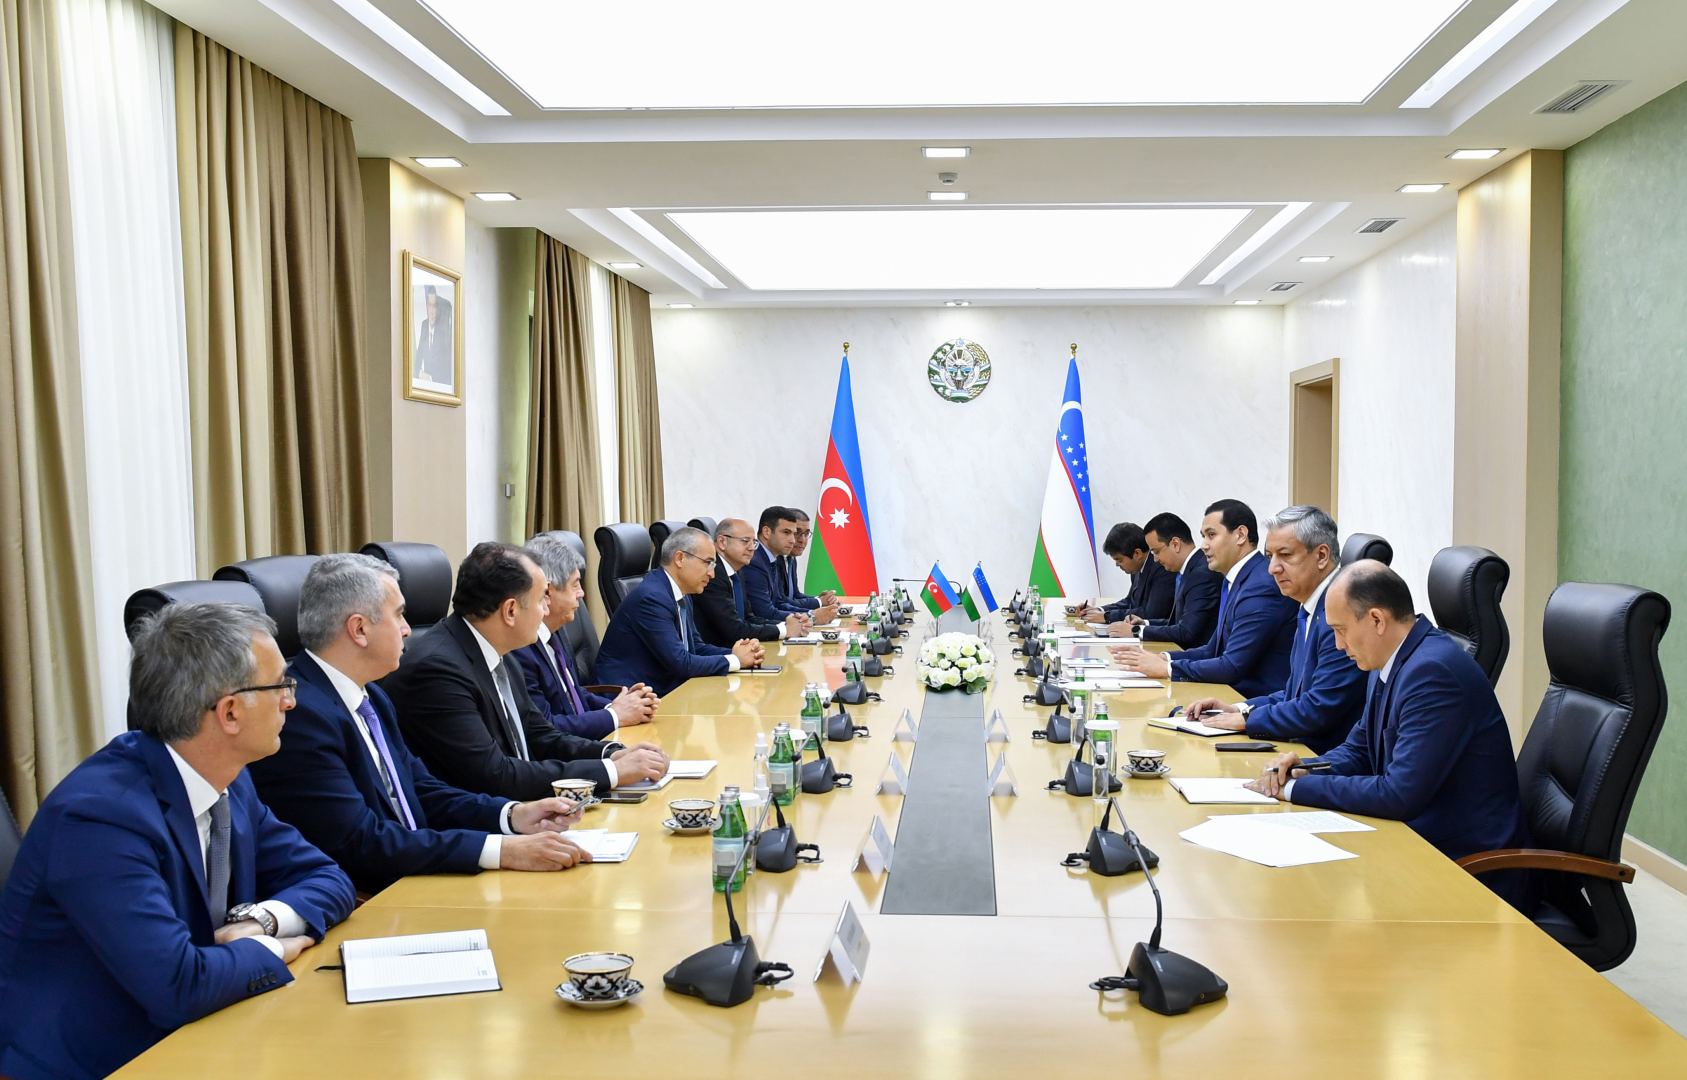 Микаил Джаббаров встретился с заместителем премьер-министра Узбекистана (ФОТО)